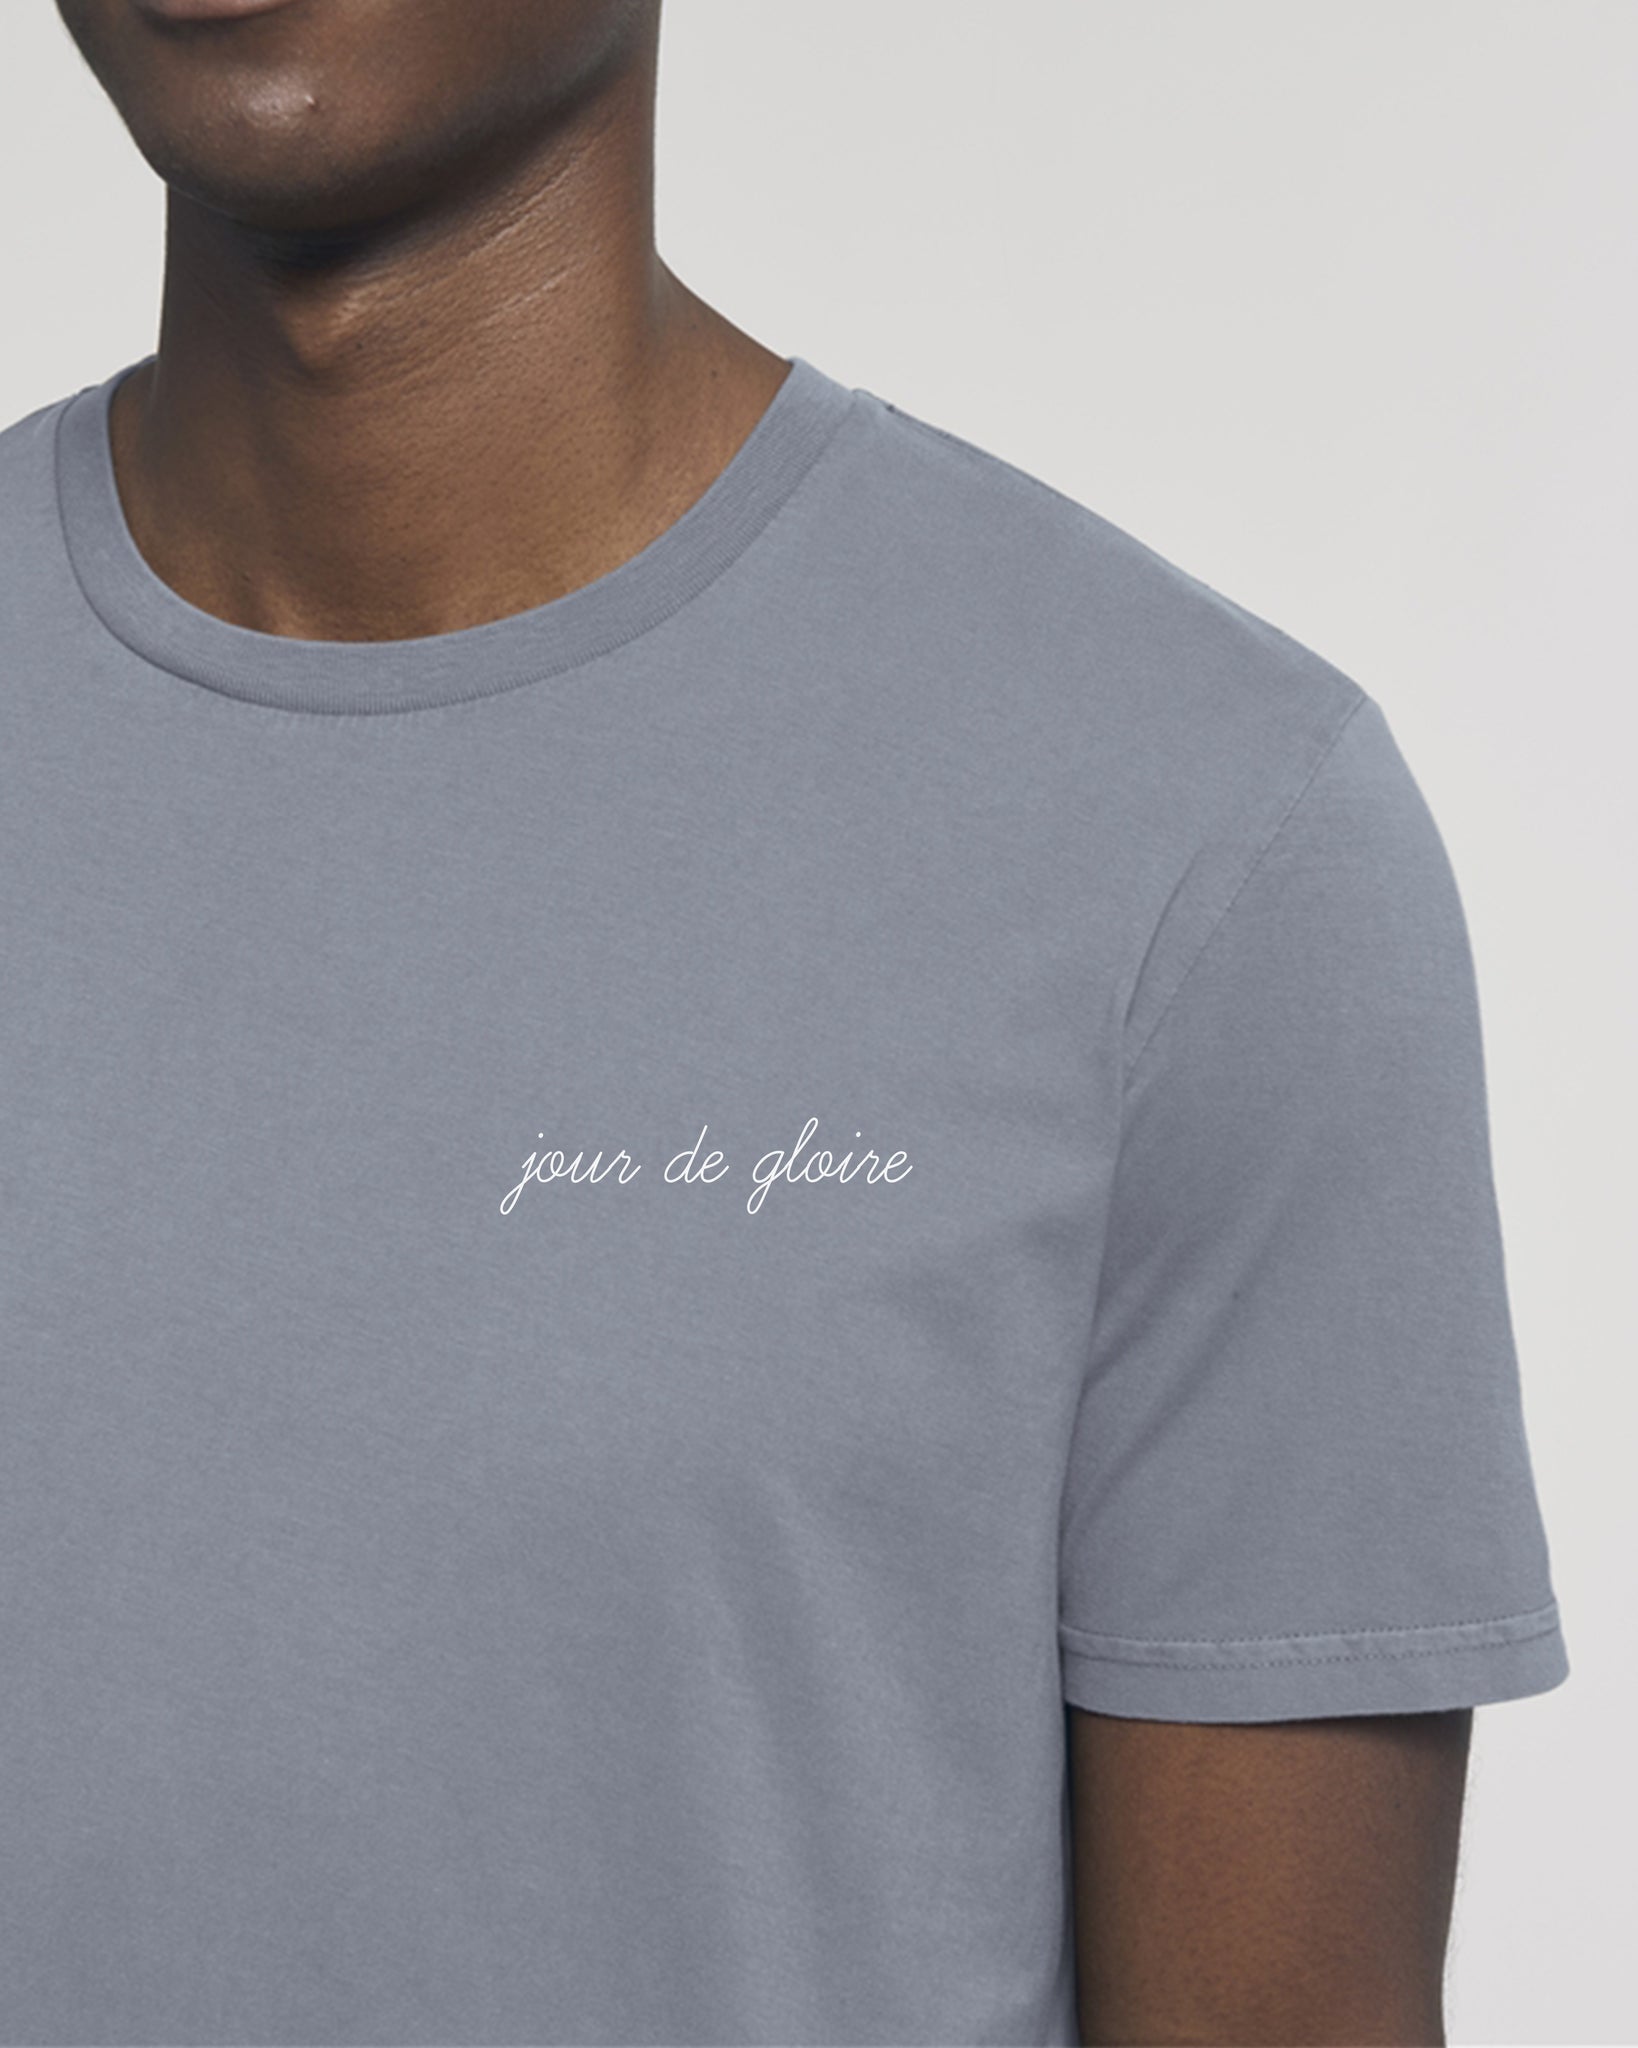 Tee Shirt vintage brodé "Jour de Gloire" - Foot Dimanche 